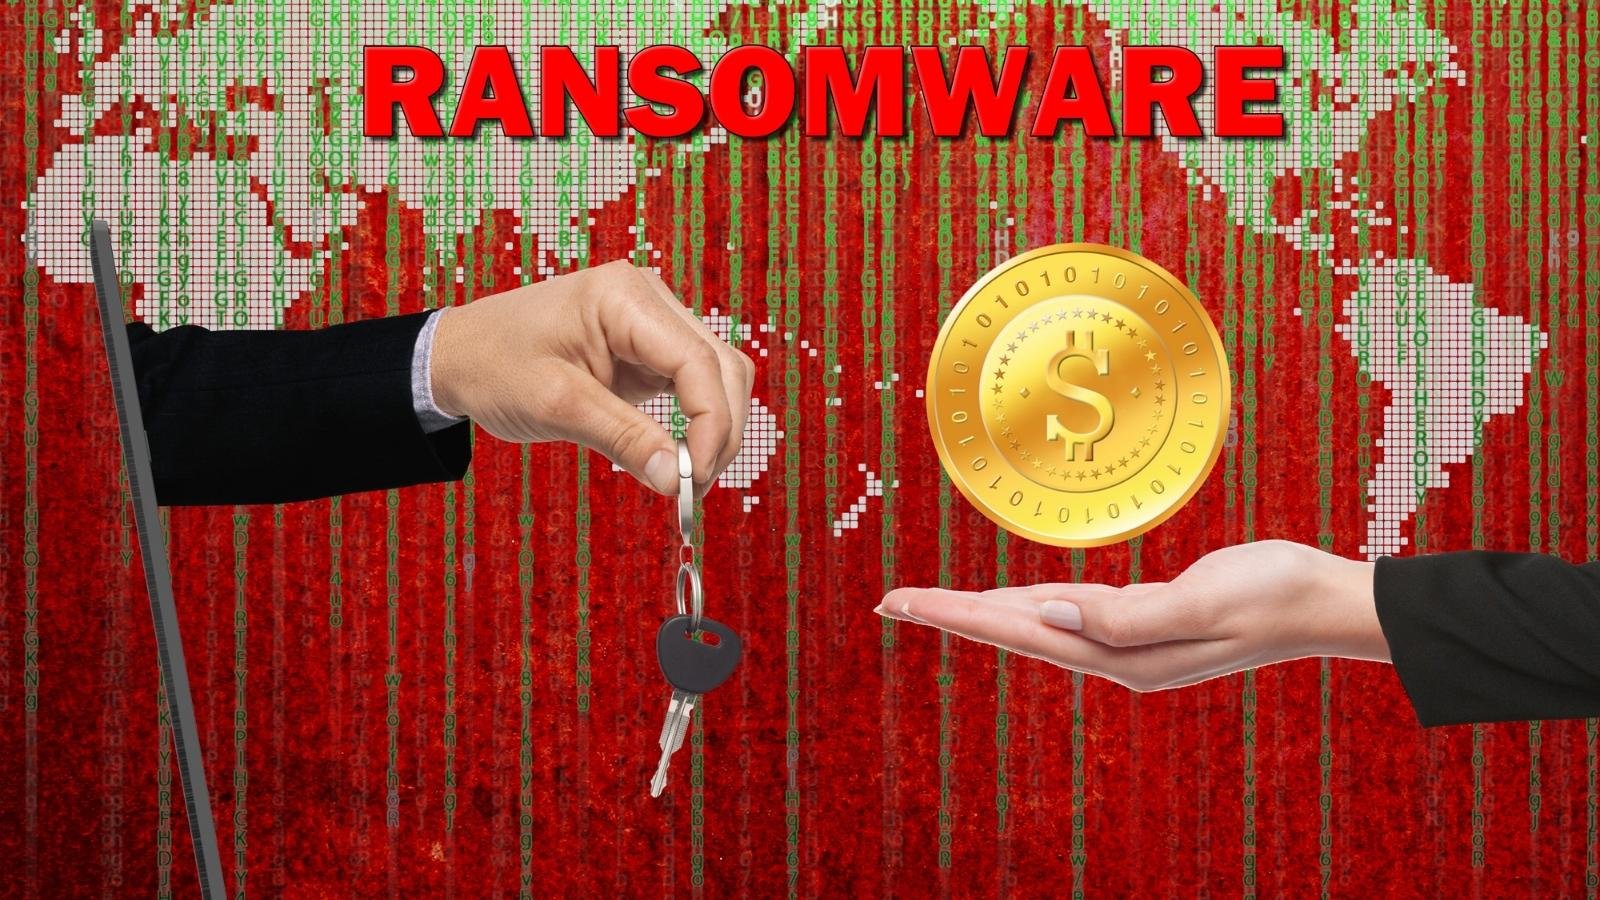 Ransomware Significato Pericoli E Metodi Di Difesa Giornalettismo